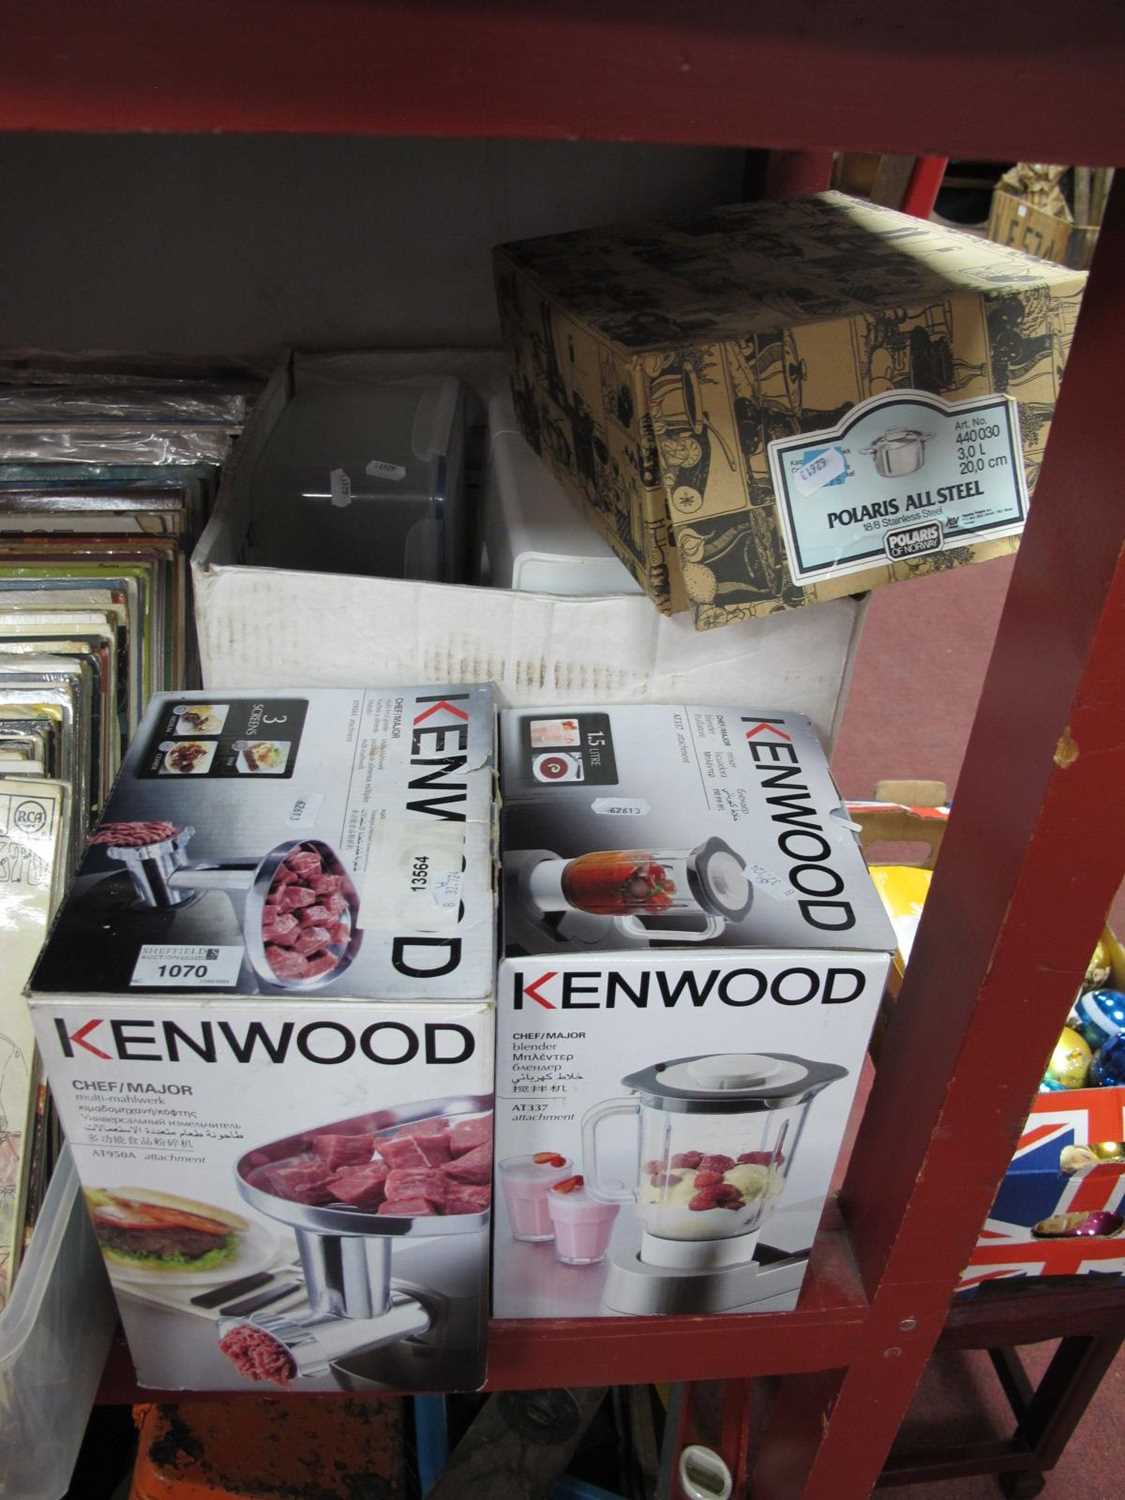 Kenwood Mixer, blender, food grinder, stainless steel pan.